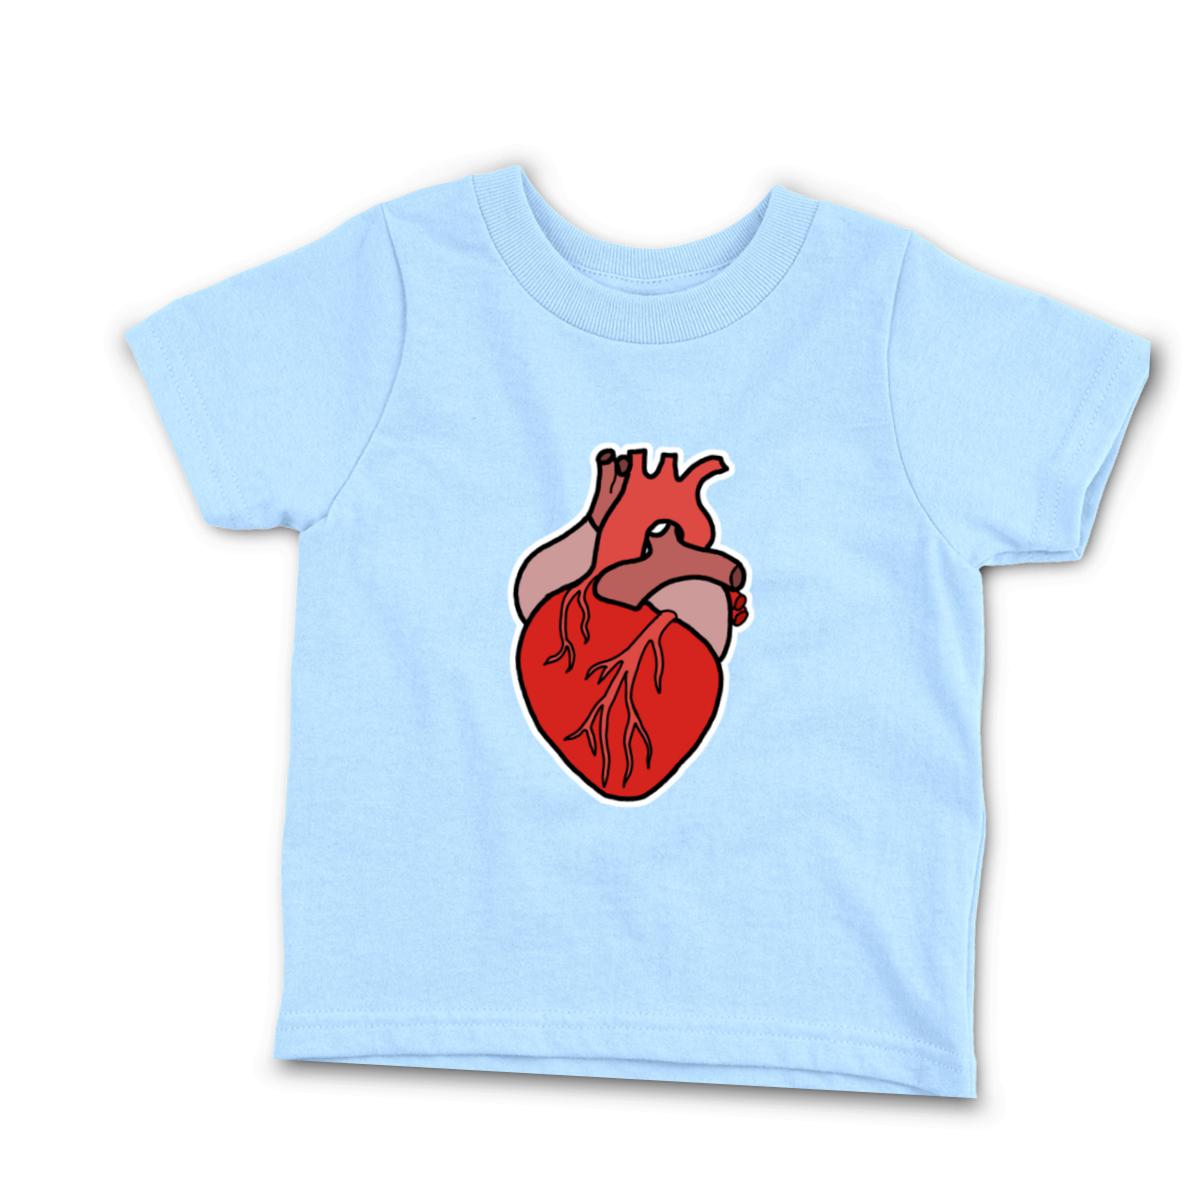 Illustrative Heart Infant Tee 18M light-blue